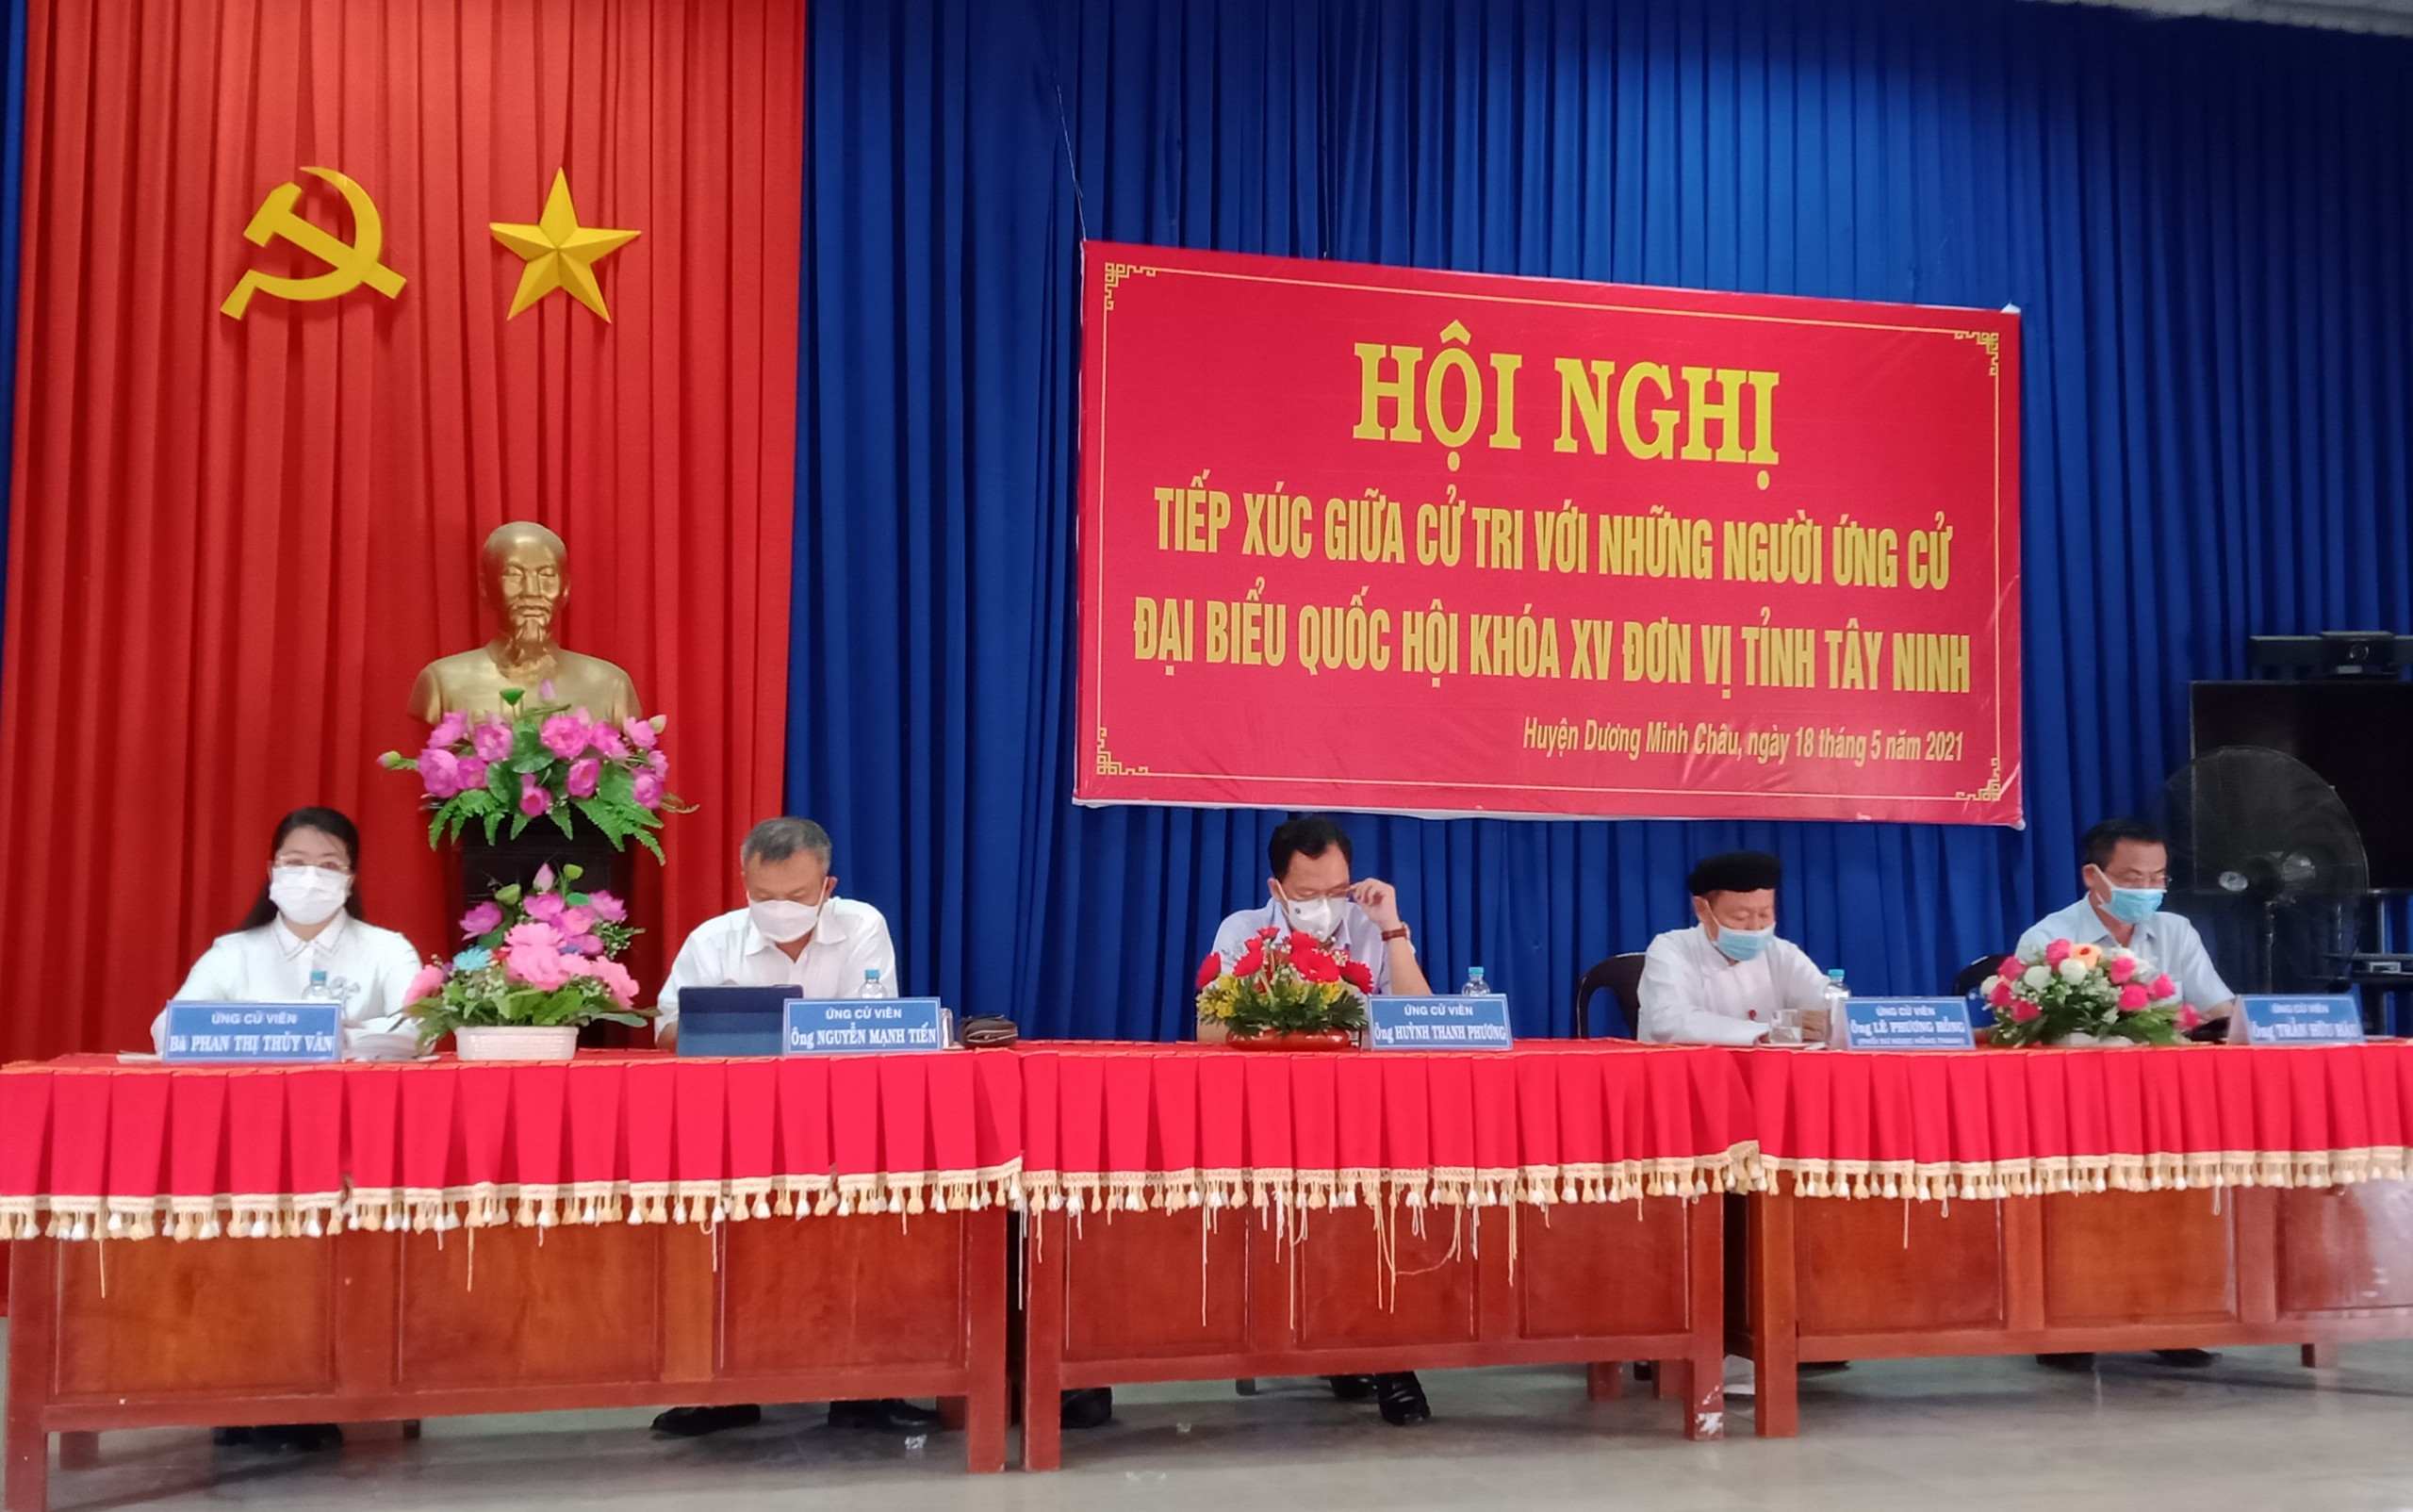 Ứng cử viên Đại biểu Quốc hội đơn vị số 2  tiếp xúc cử tri cụm các xã của huyện Dương Minh Châu